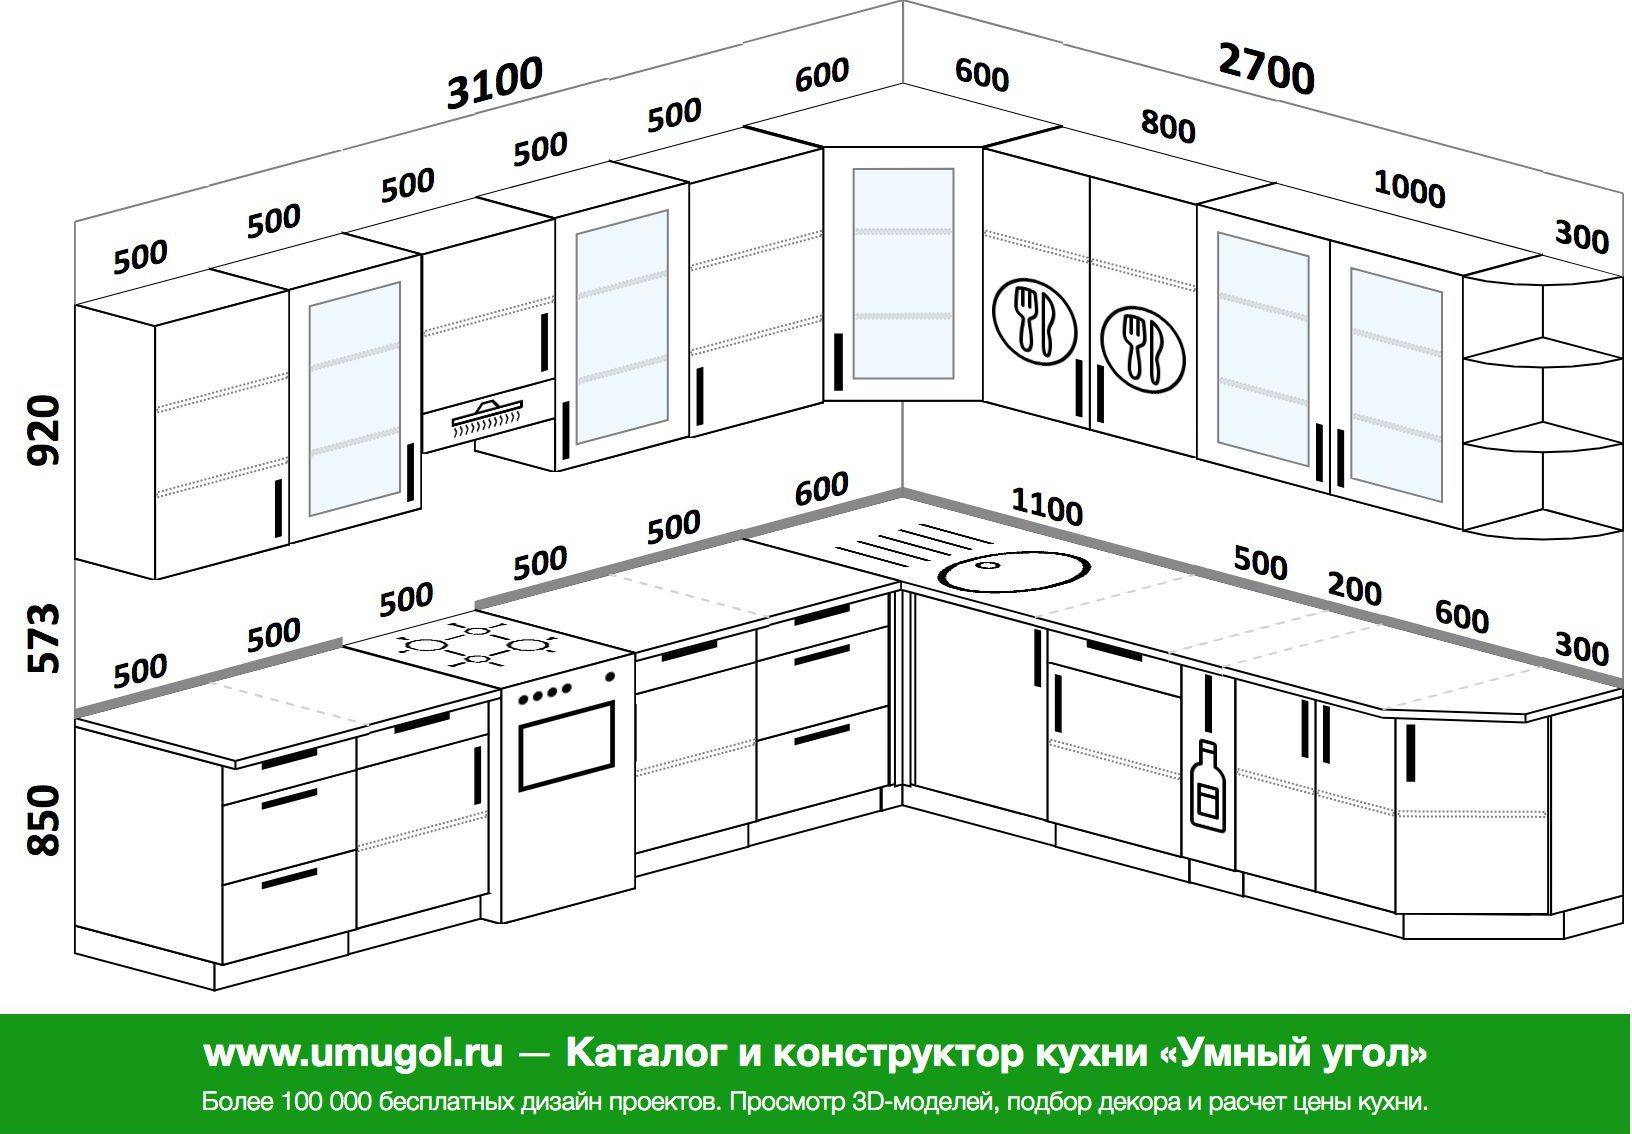 кухонный гарнитур высота от пола до столешницы на кухне